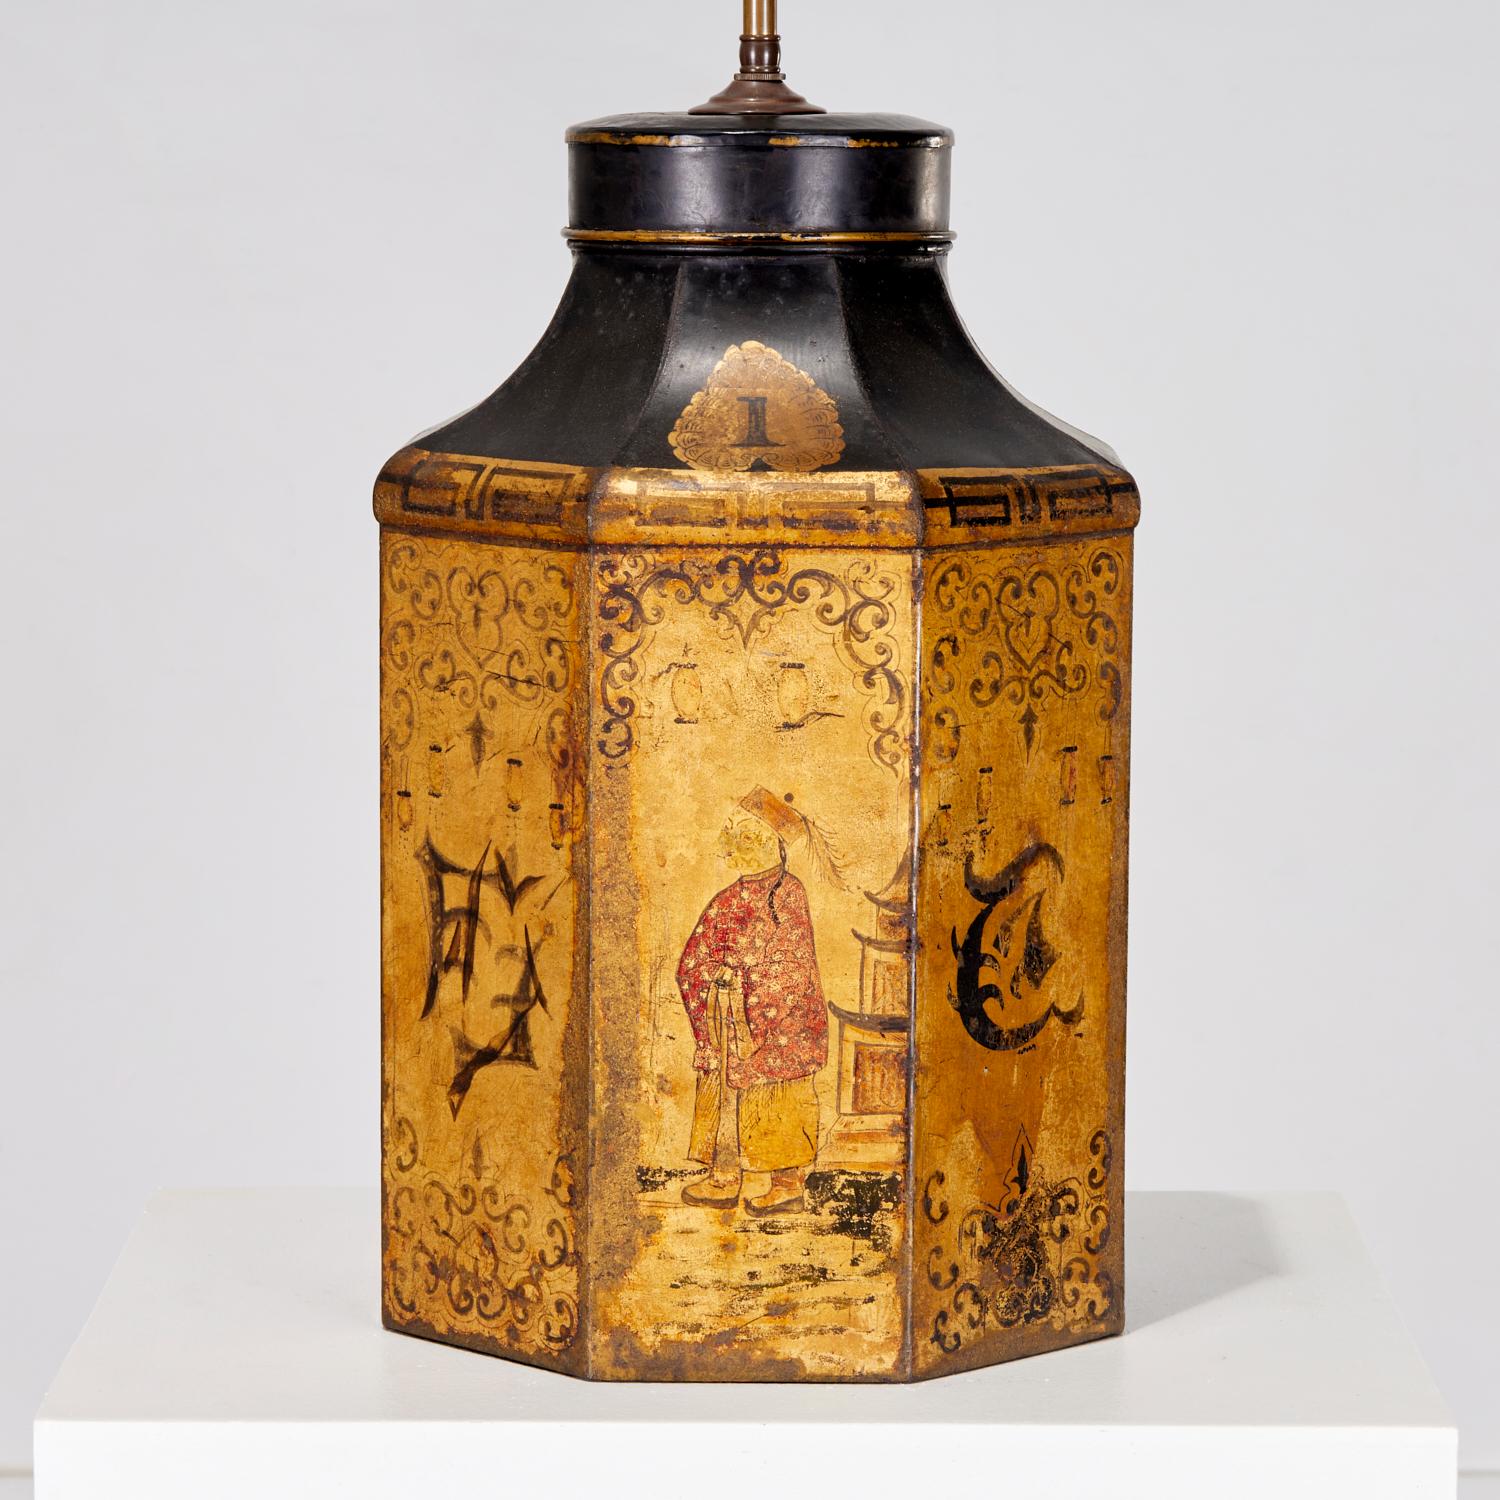 Fin du 19e siècle, boîte à thé anglaise peinte en noir et or avec décor de Chinoiserie, montée en lampe de table à 3 lumières avec un grand épi de faîtage en laiton.

Cette lampe a beaucoup de caractère et la peinture est tout à fait charmante. Les